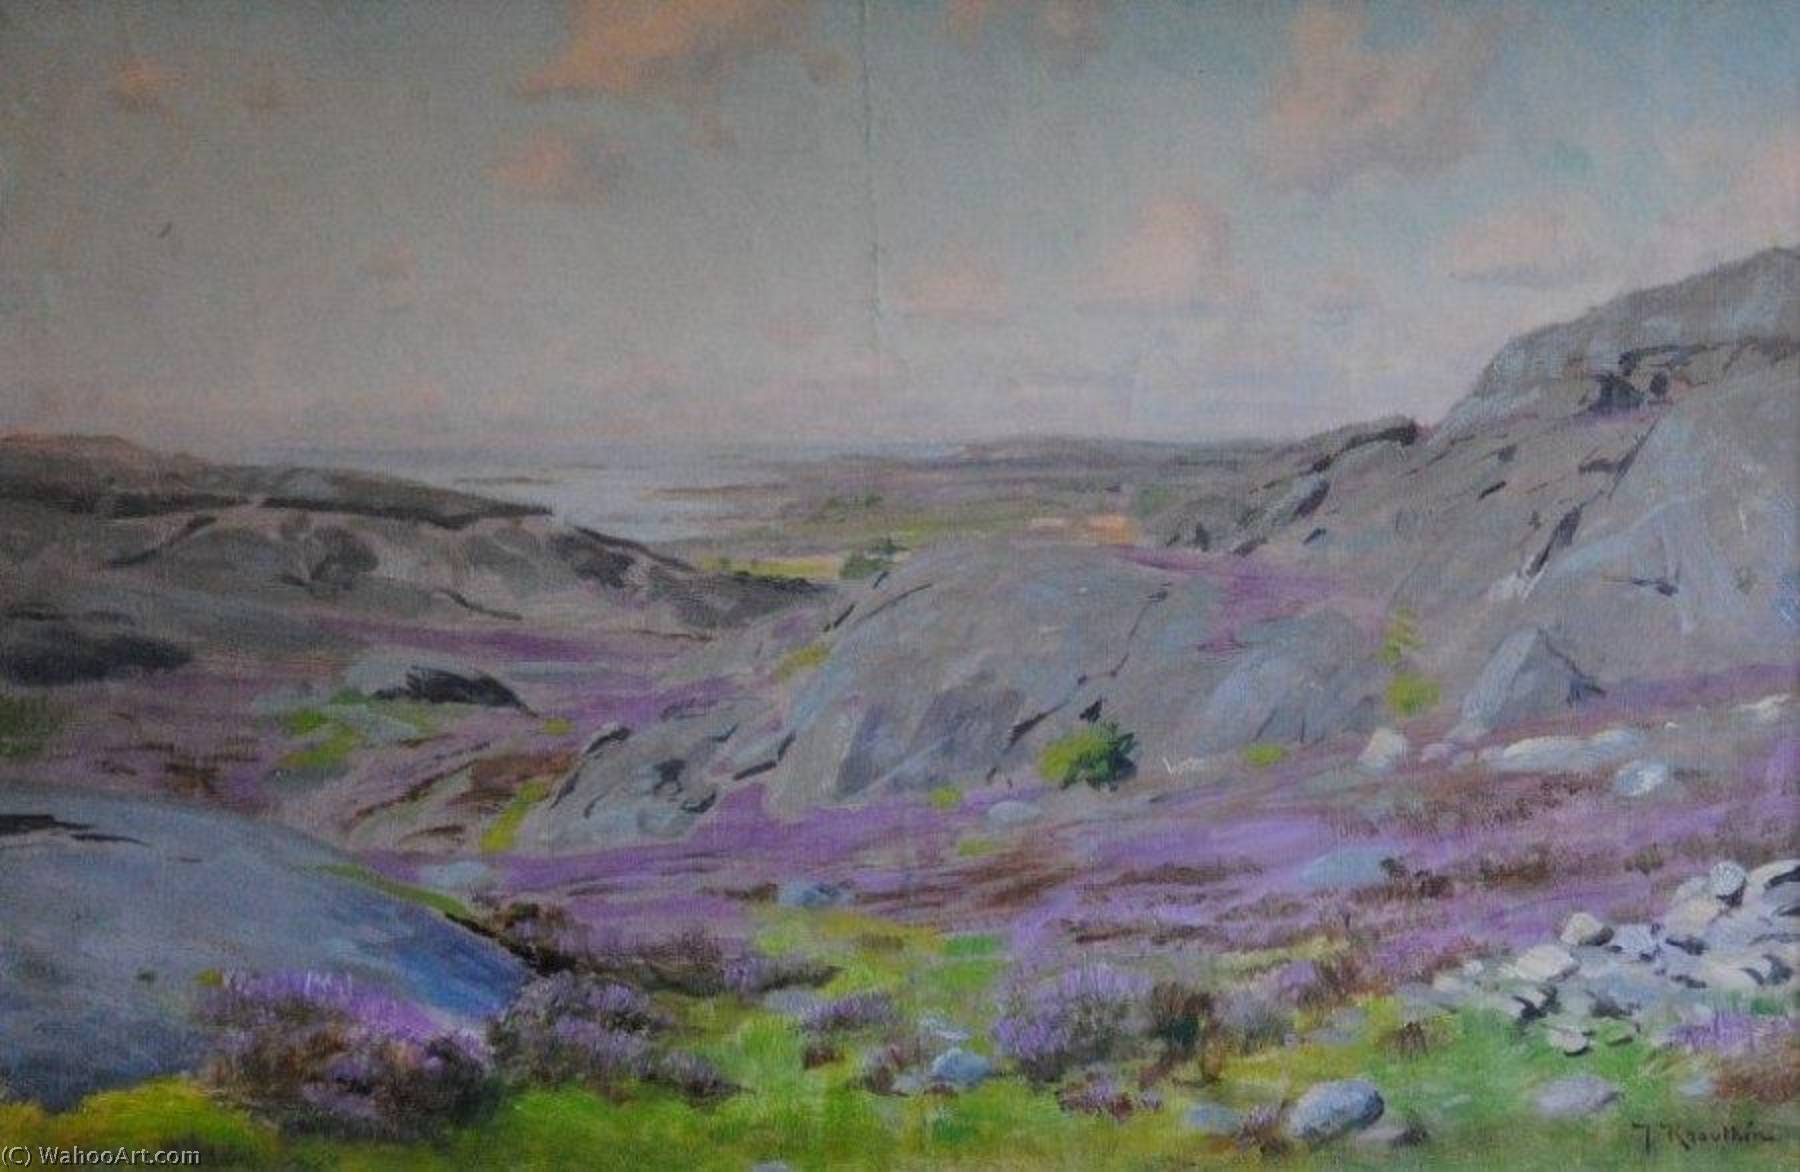 WikiOO.org - Encyclopedia of Fine Arts - Malba, Artwork Johan Krouthén - Landscape